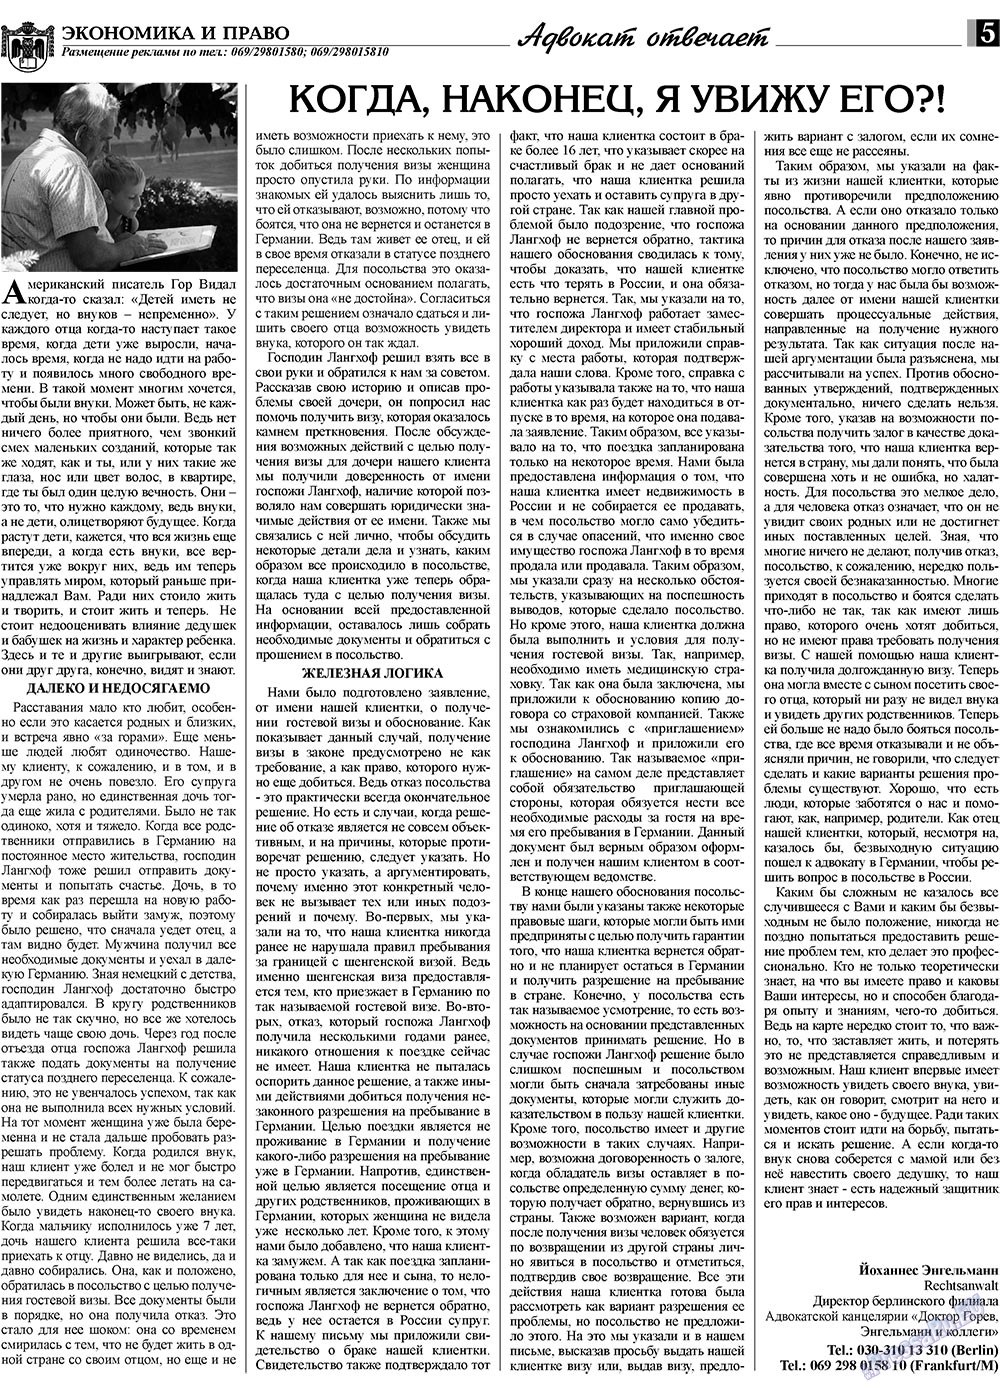 Экономика и право, газета. 2009 №11 стр.5